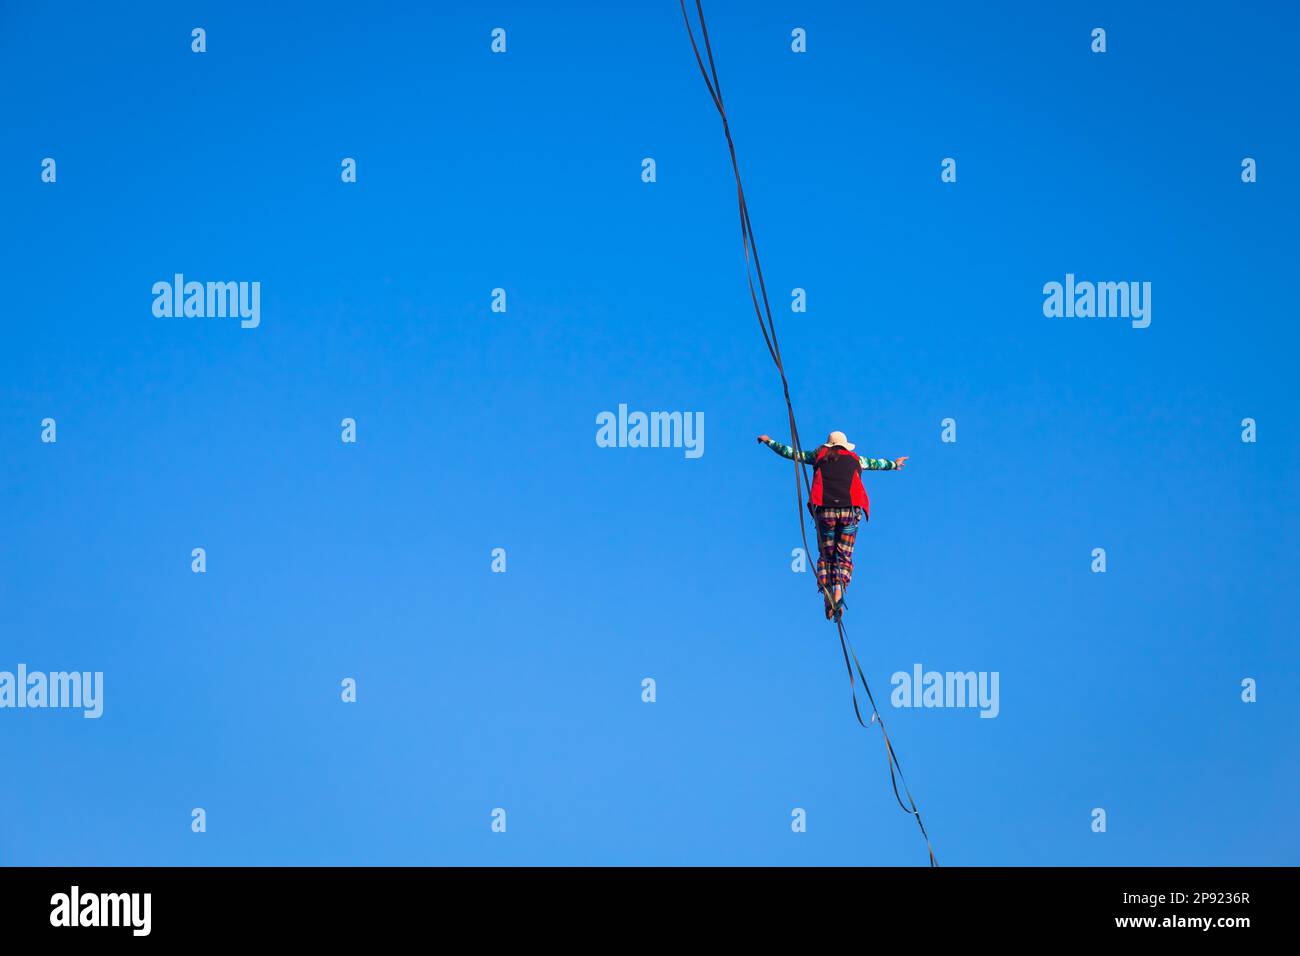 LANZO, ITALIEN - CIRCA OKTOBER 2020: Slackline-Athlet während seiner Aufführung. Konzentration, Balance und Abenteuer in diesem dynamischen Sport Stockfoto